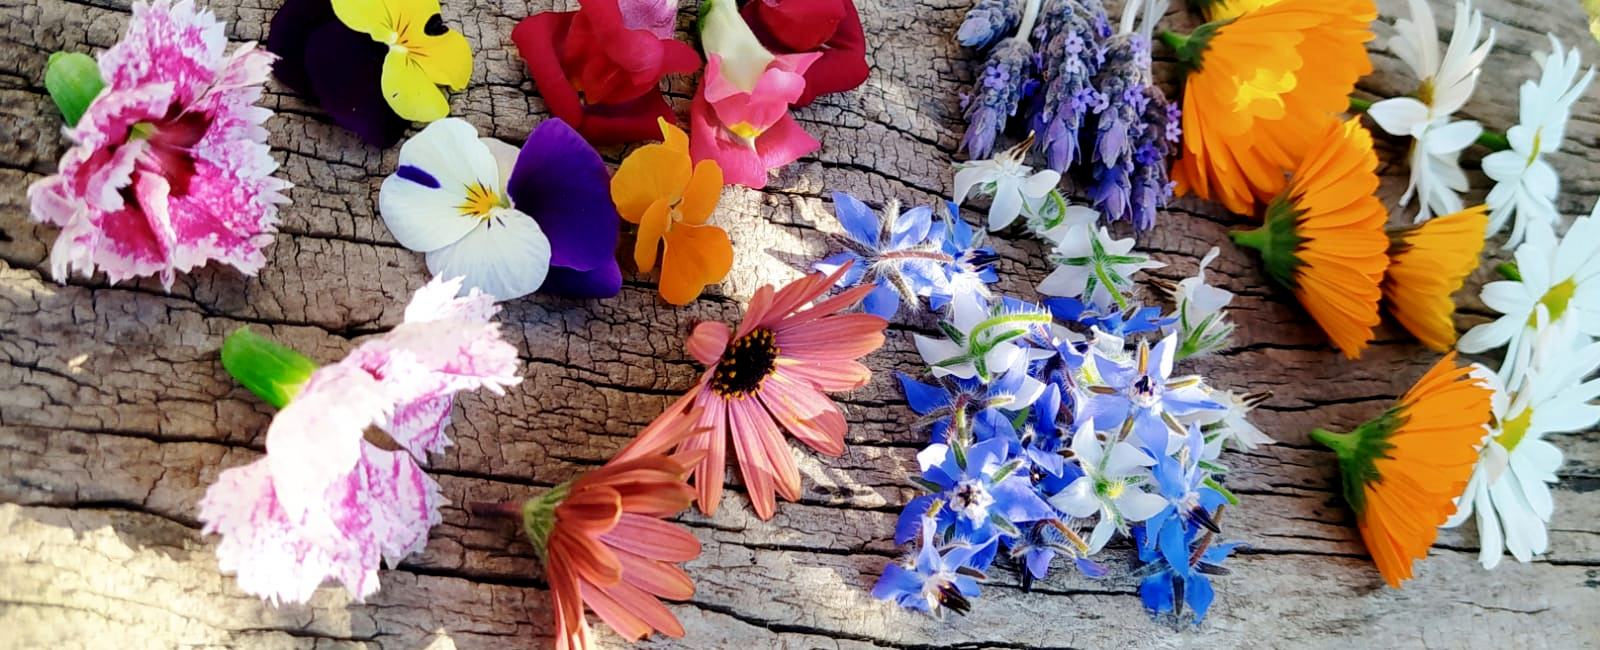 Las flores de tu jardín, las flores de tu próxima comida - Bacap Noticias